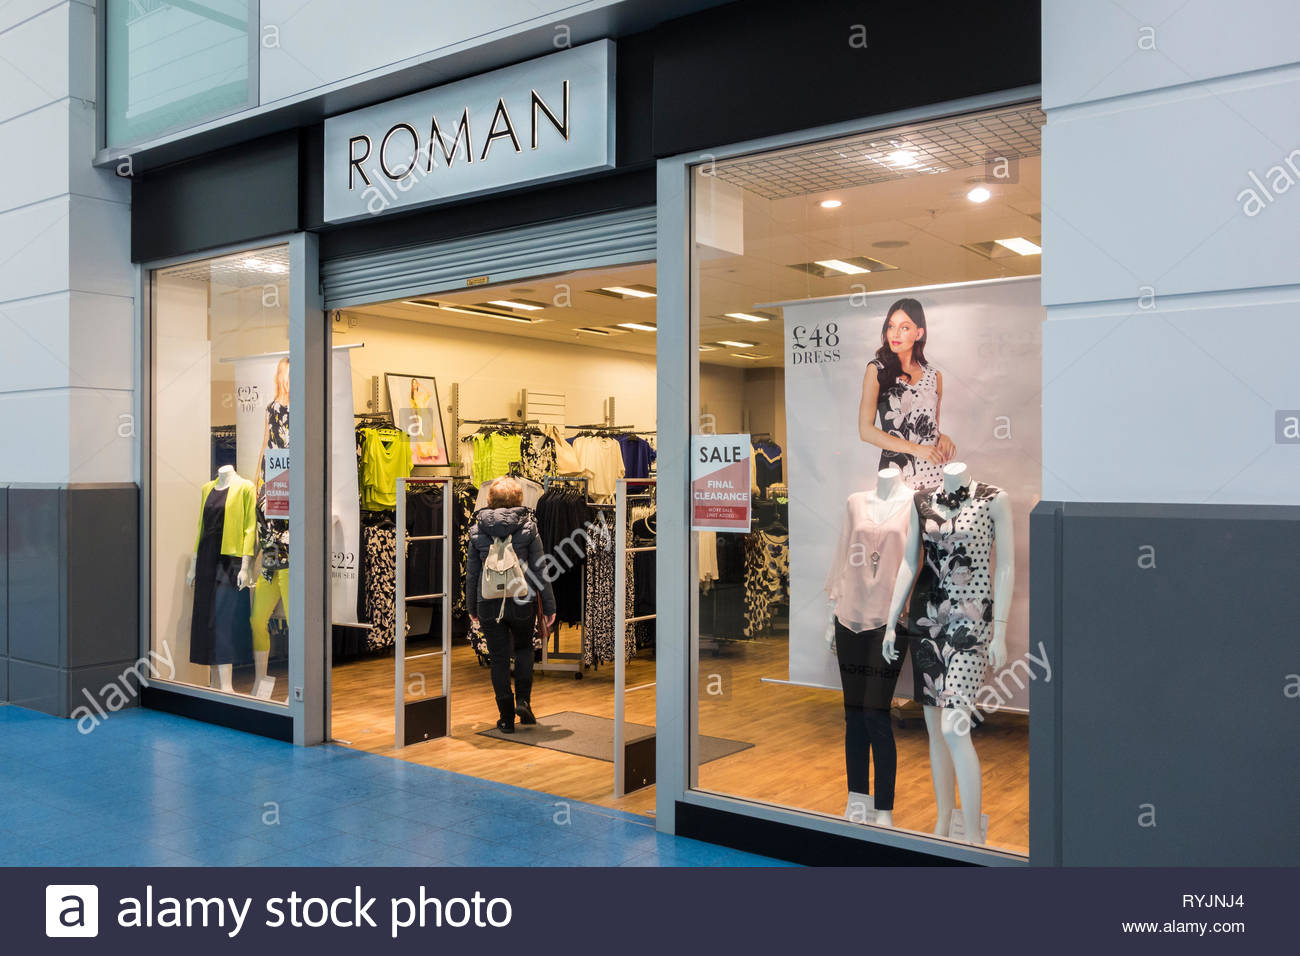 roman clothes shop uk